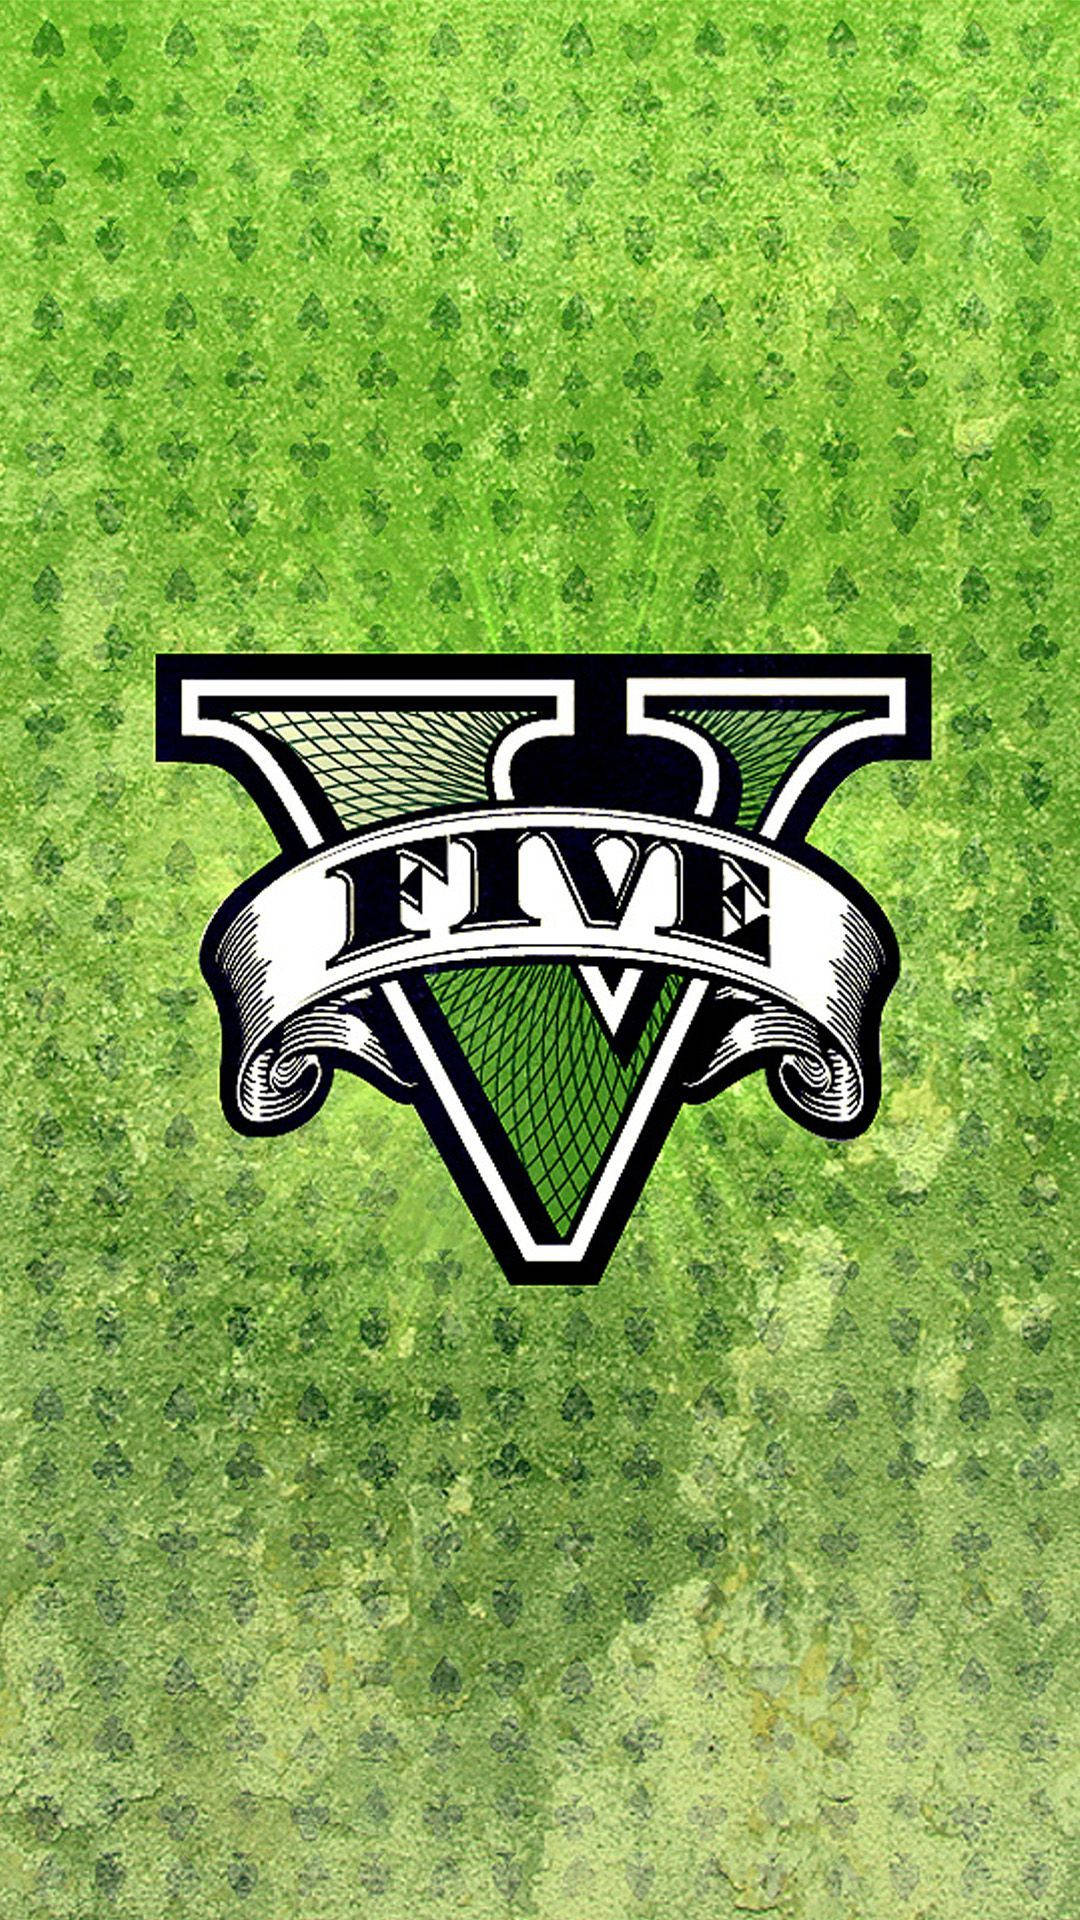 Logotipodel Teléfono De Gta 5 En Un Patrón Verde Fondo de pantalla